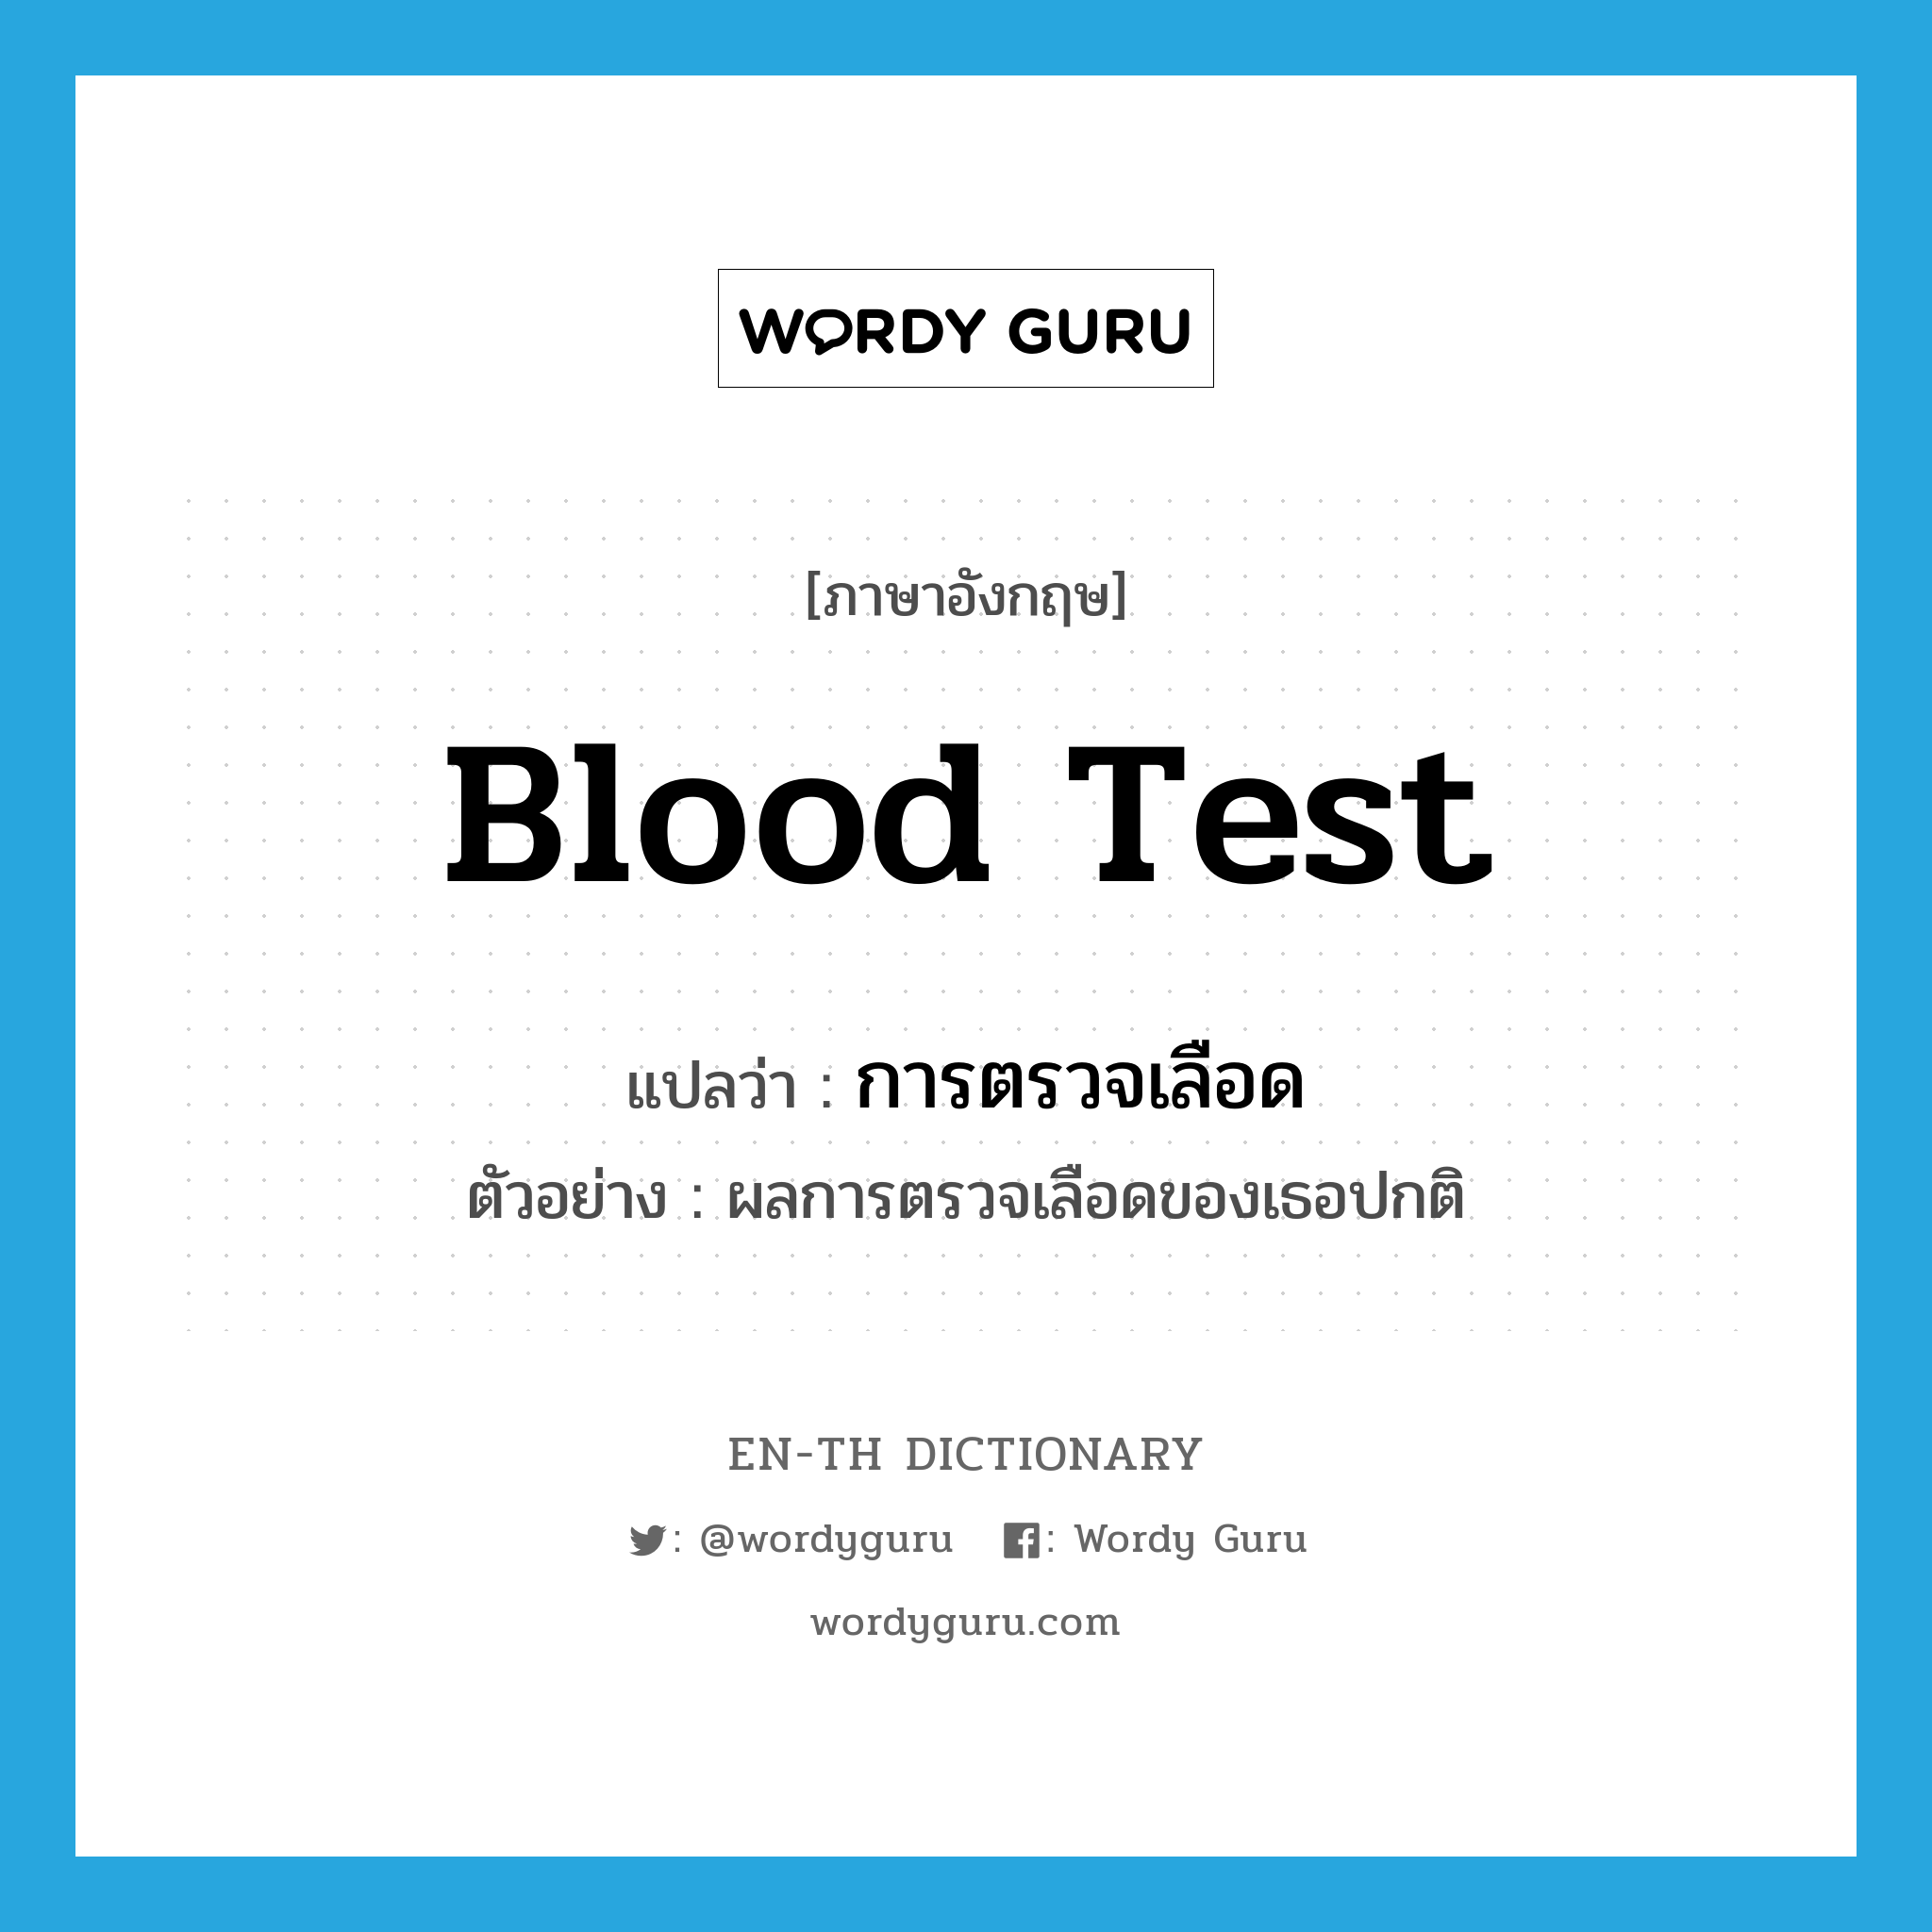 การตรวจเลือด ภาษาอังกฤษ?, คำศัพท์ภาษาอังกฤษ การตรวจเลือด แปลว่า blood test ประเภท N ตัวอย่าง ผลการตรวจเลือดของเธอปกติ หมวด N